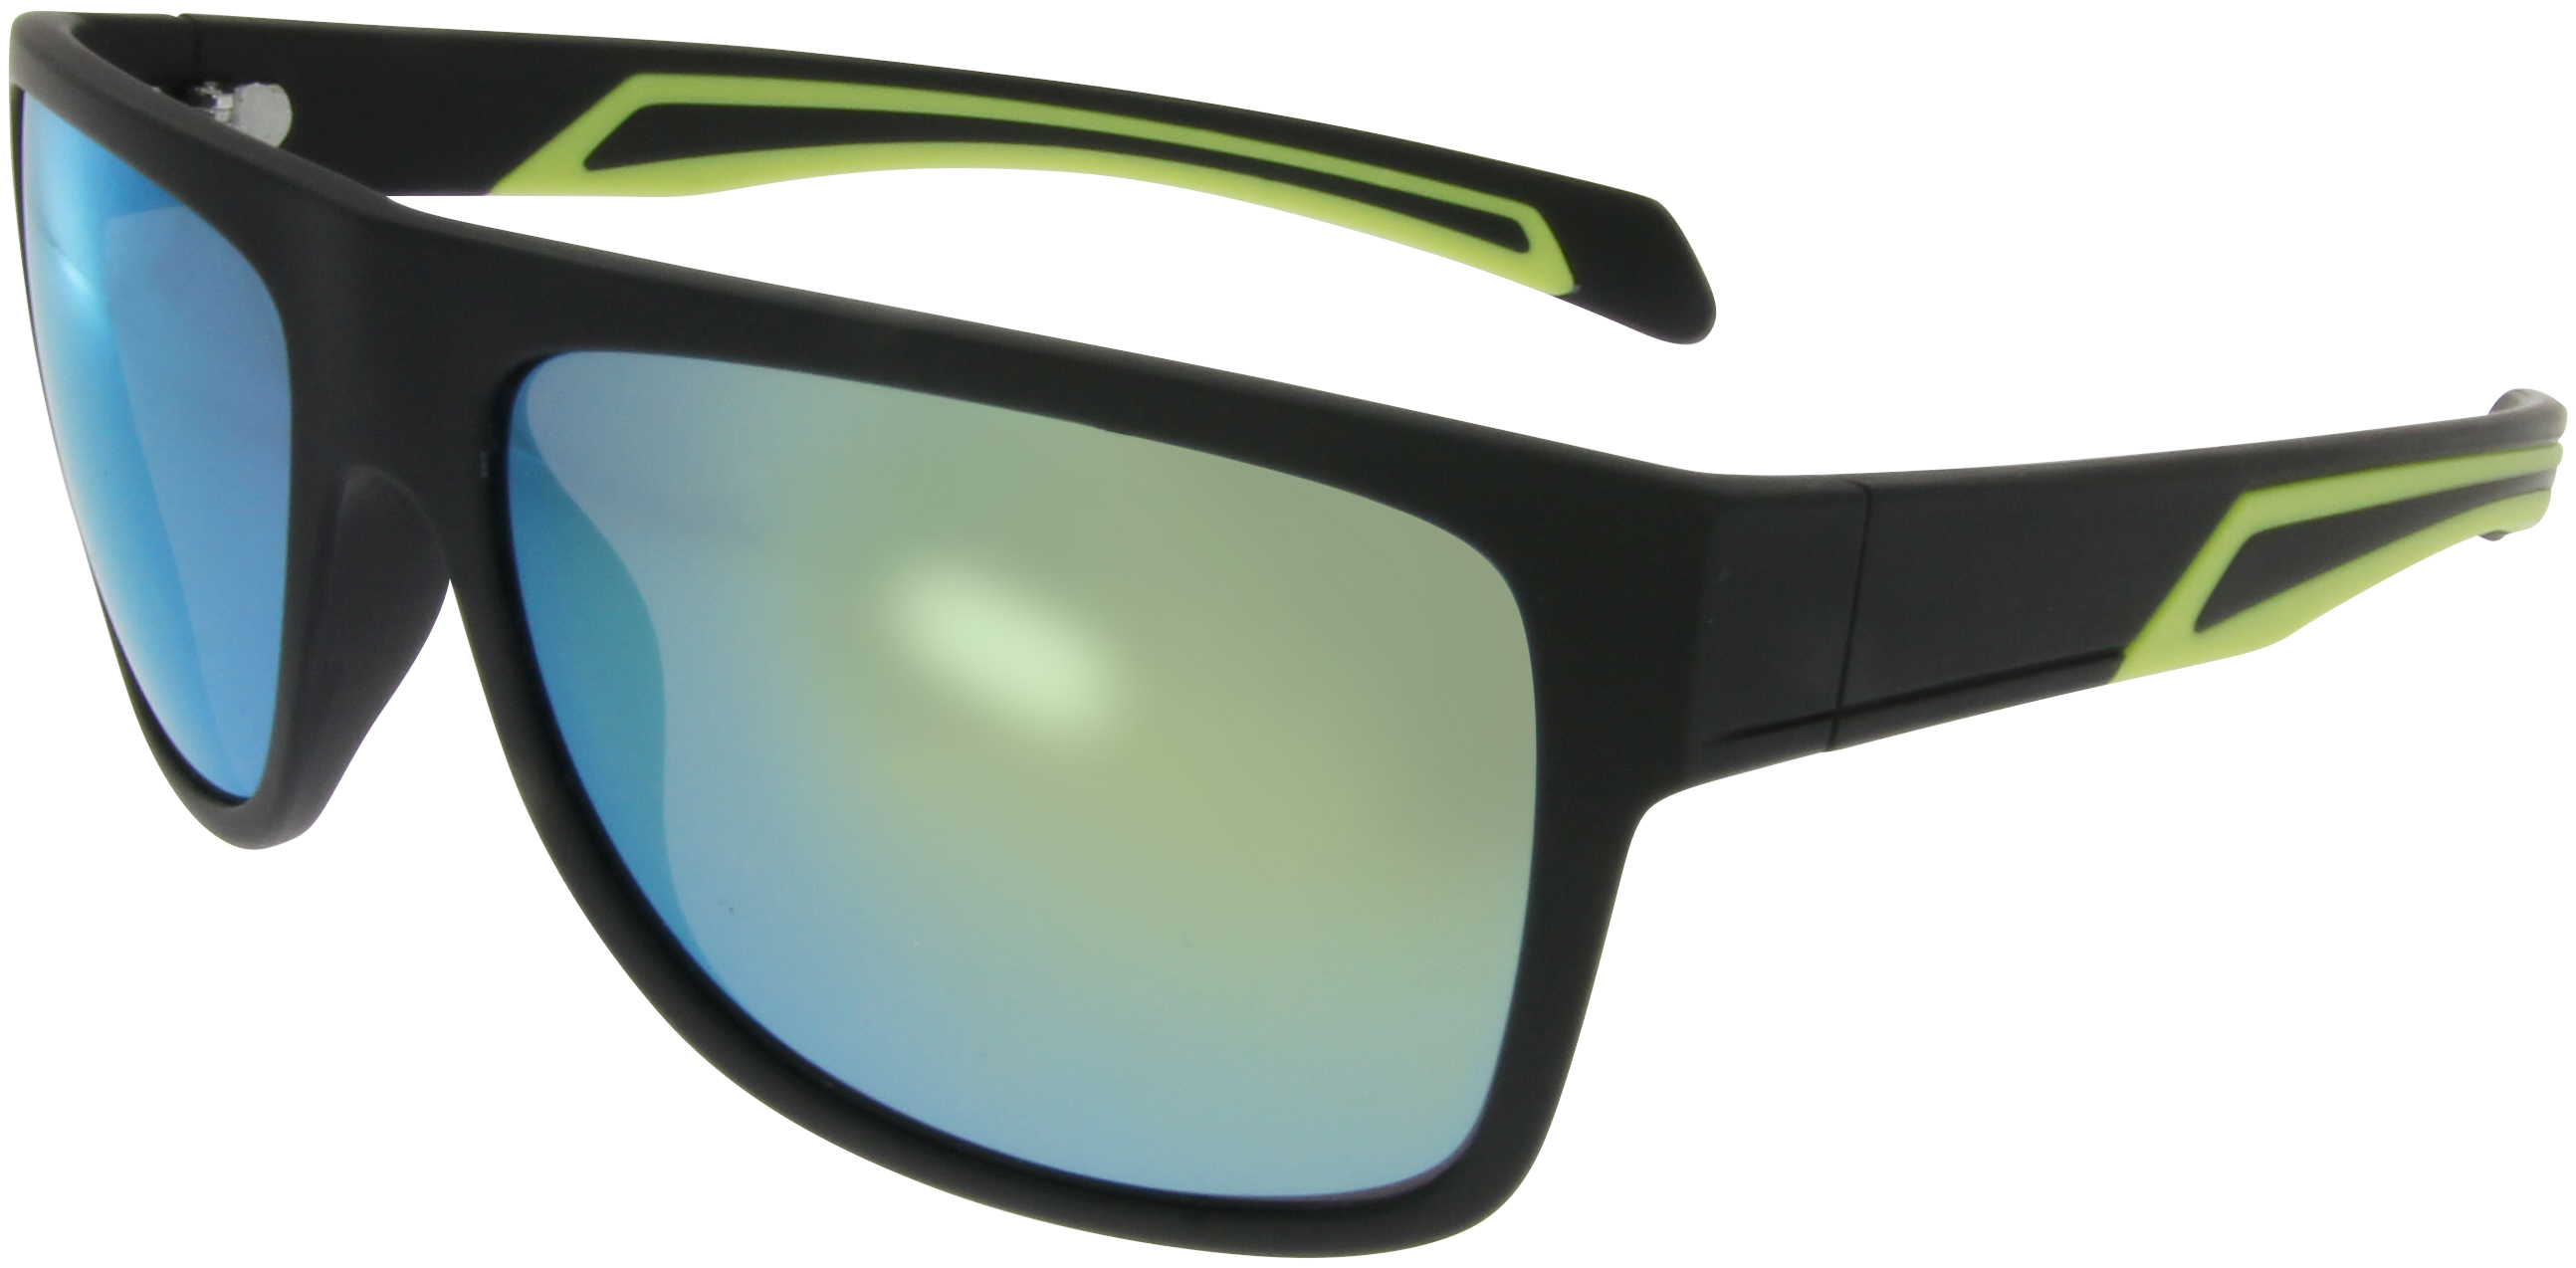 Sportbrille Sonnenbrille Grau Grün Blau verspiegelt Motorradbrille Radbrille M16 